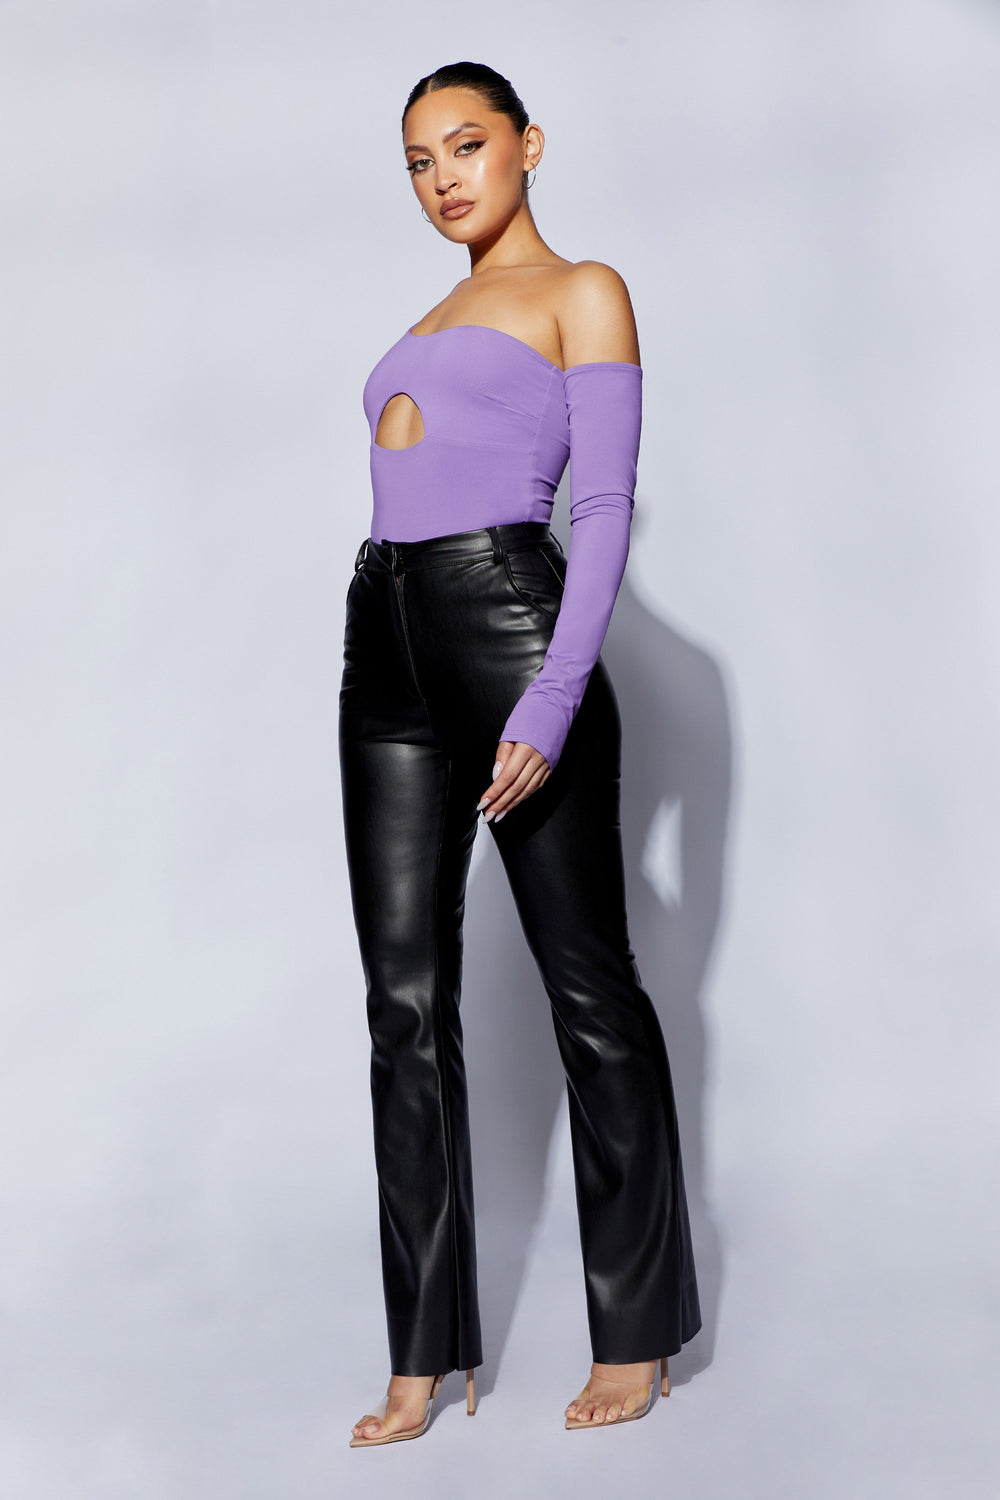 Lexi One Shoulder Cut Out Bodysuit - Purple